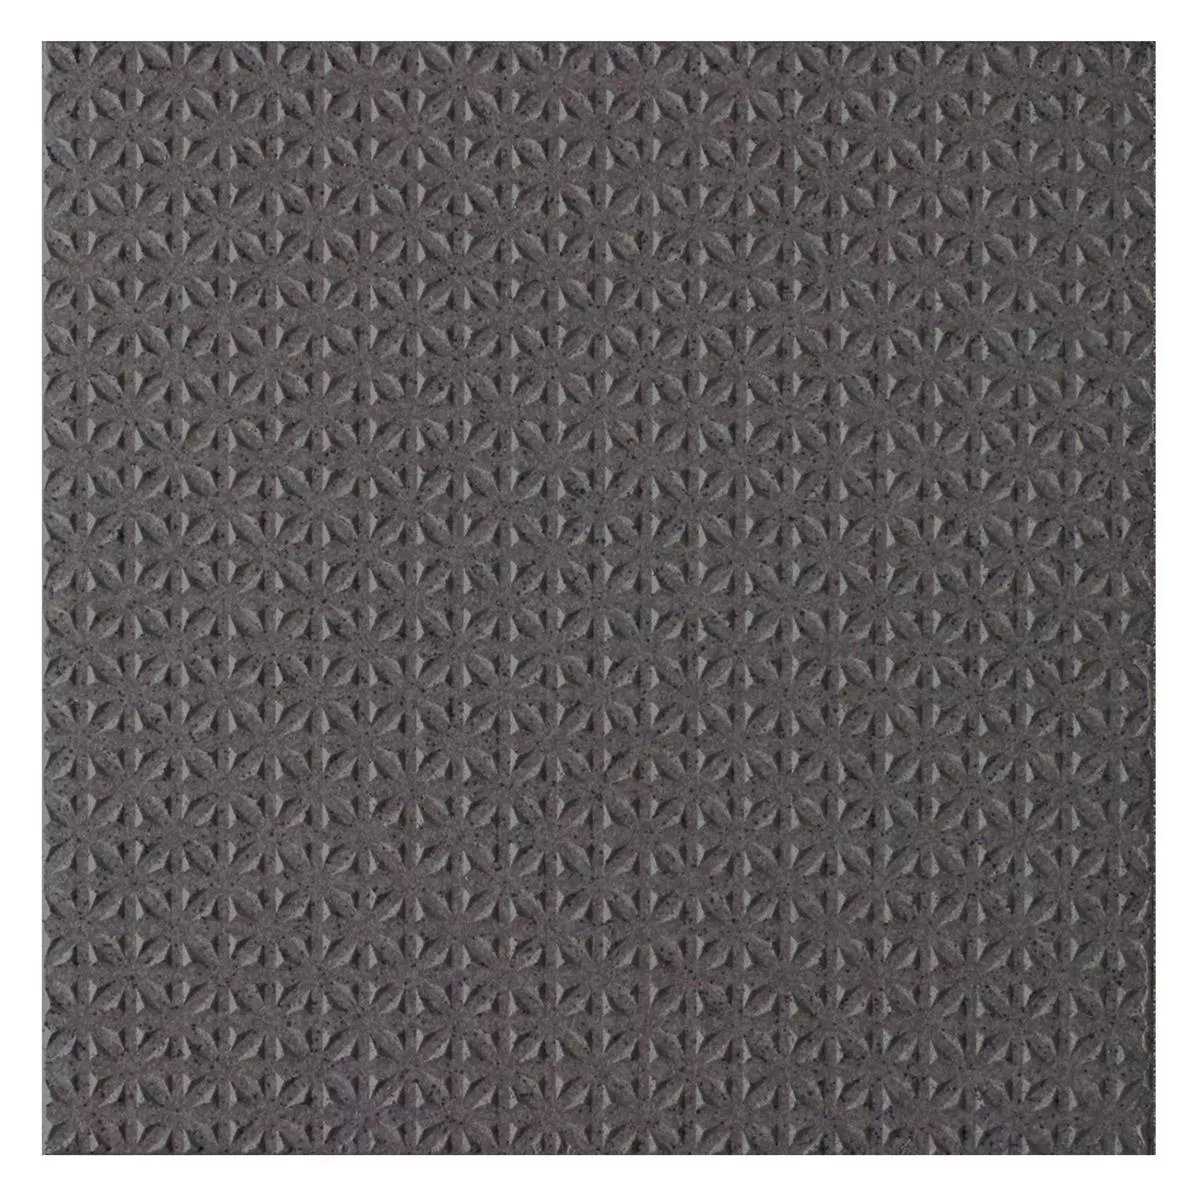 Πρότυπο Πλακάκια Δαπέδου Courage Ψιλό Σιτάρι R12/V4/C Ανθρακίτης 20x20cm